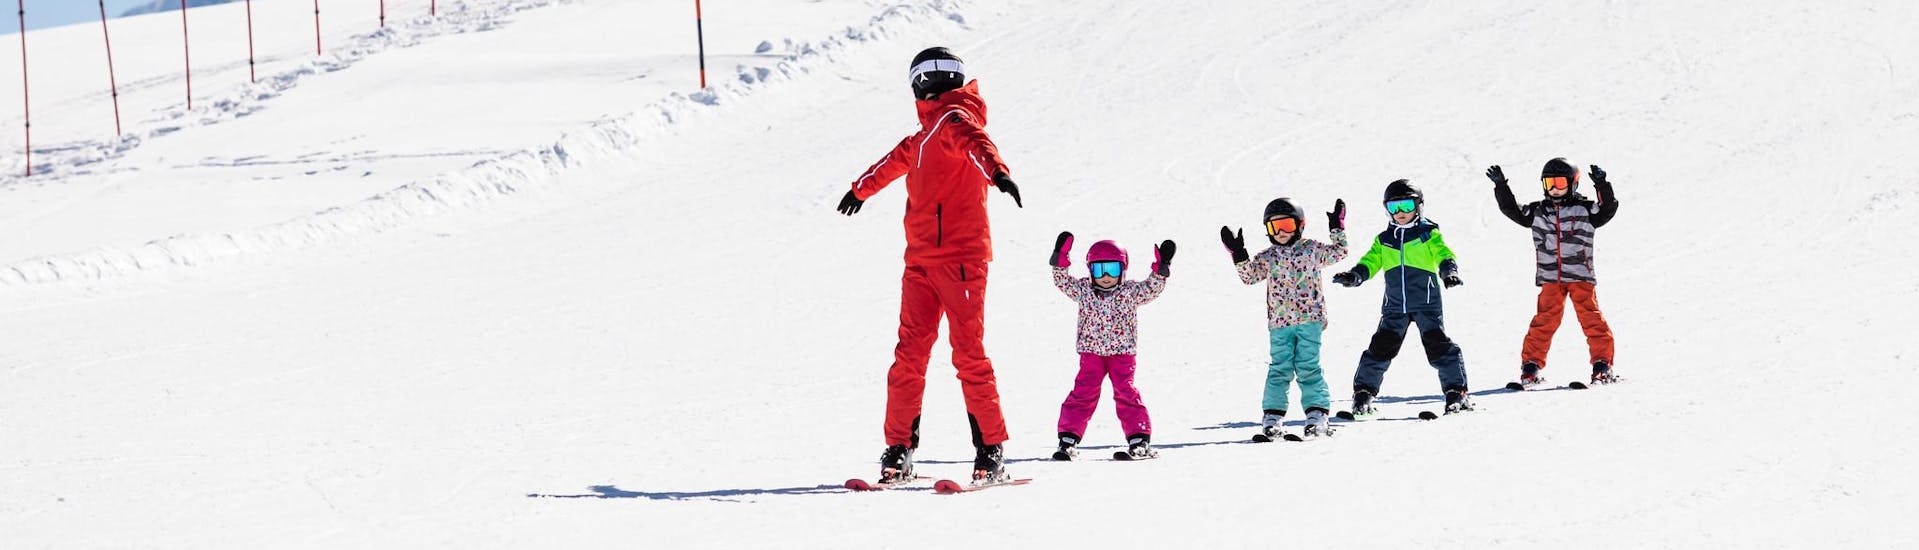 Moniteur de ski et enfants profitent d'une leçon de ski dans une école de ski près de Dortmund.